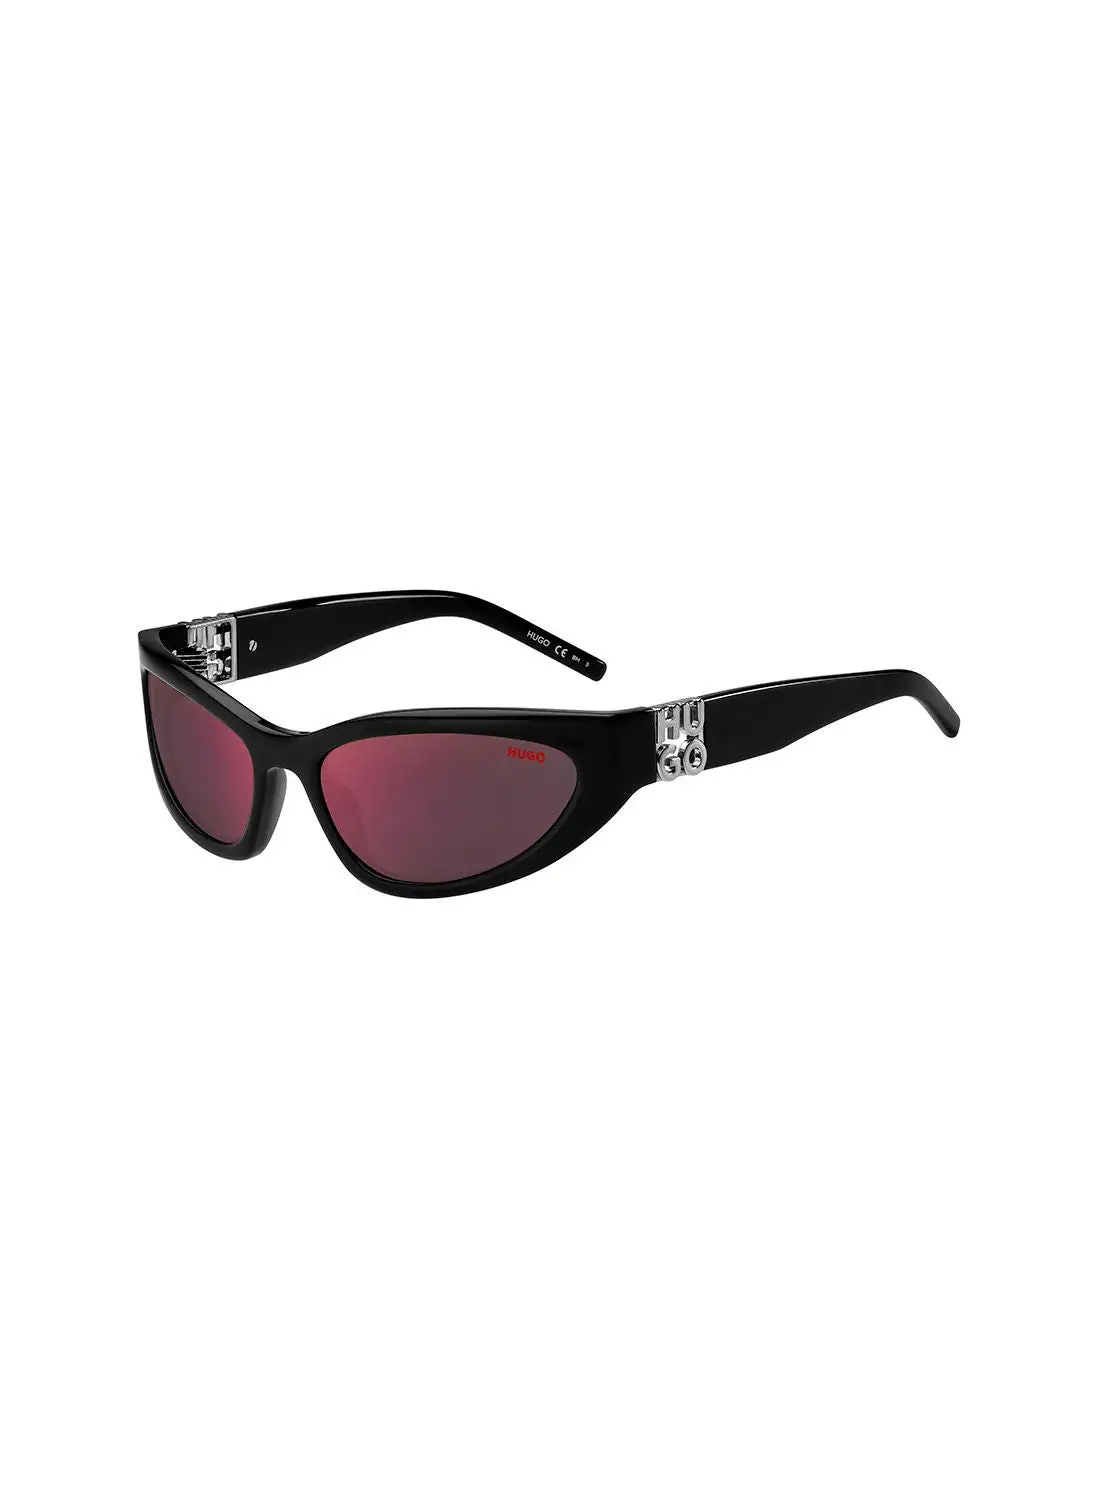 HUGO Men's UV Protection Cat Eye Sunglasses - Hg 1255/S Black 59 - Lens Size: 59 Mm